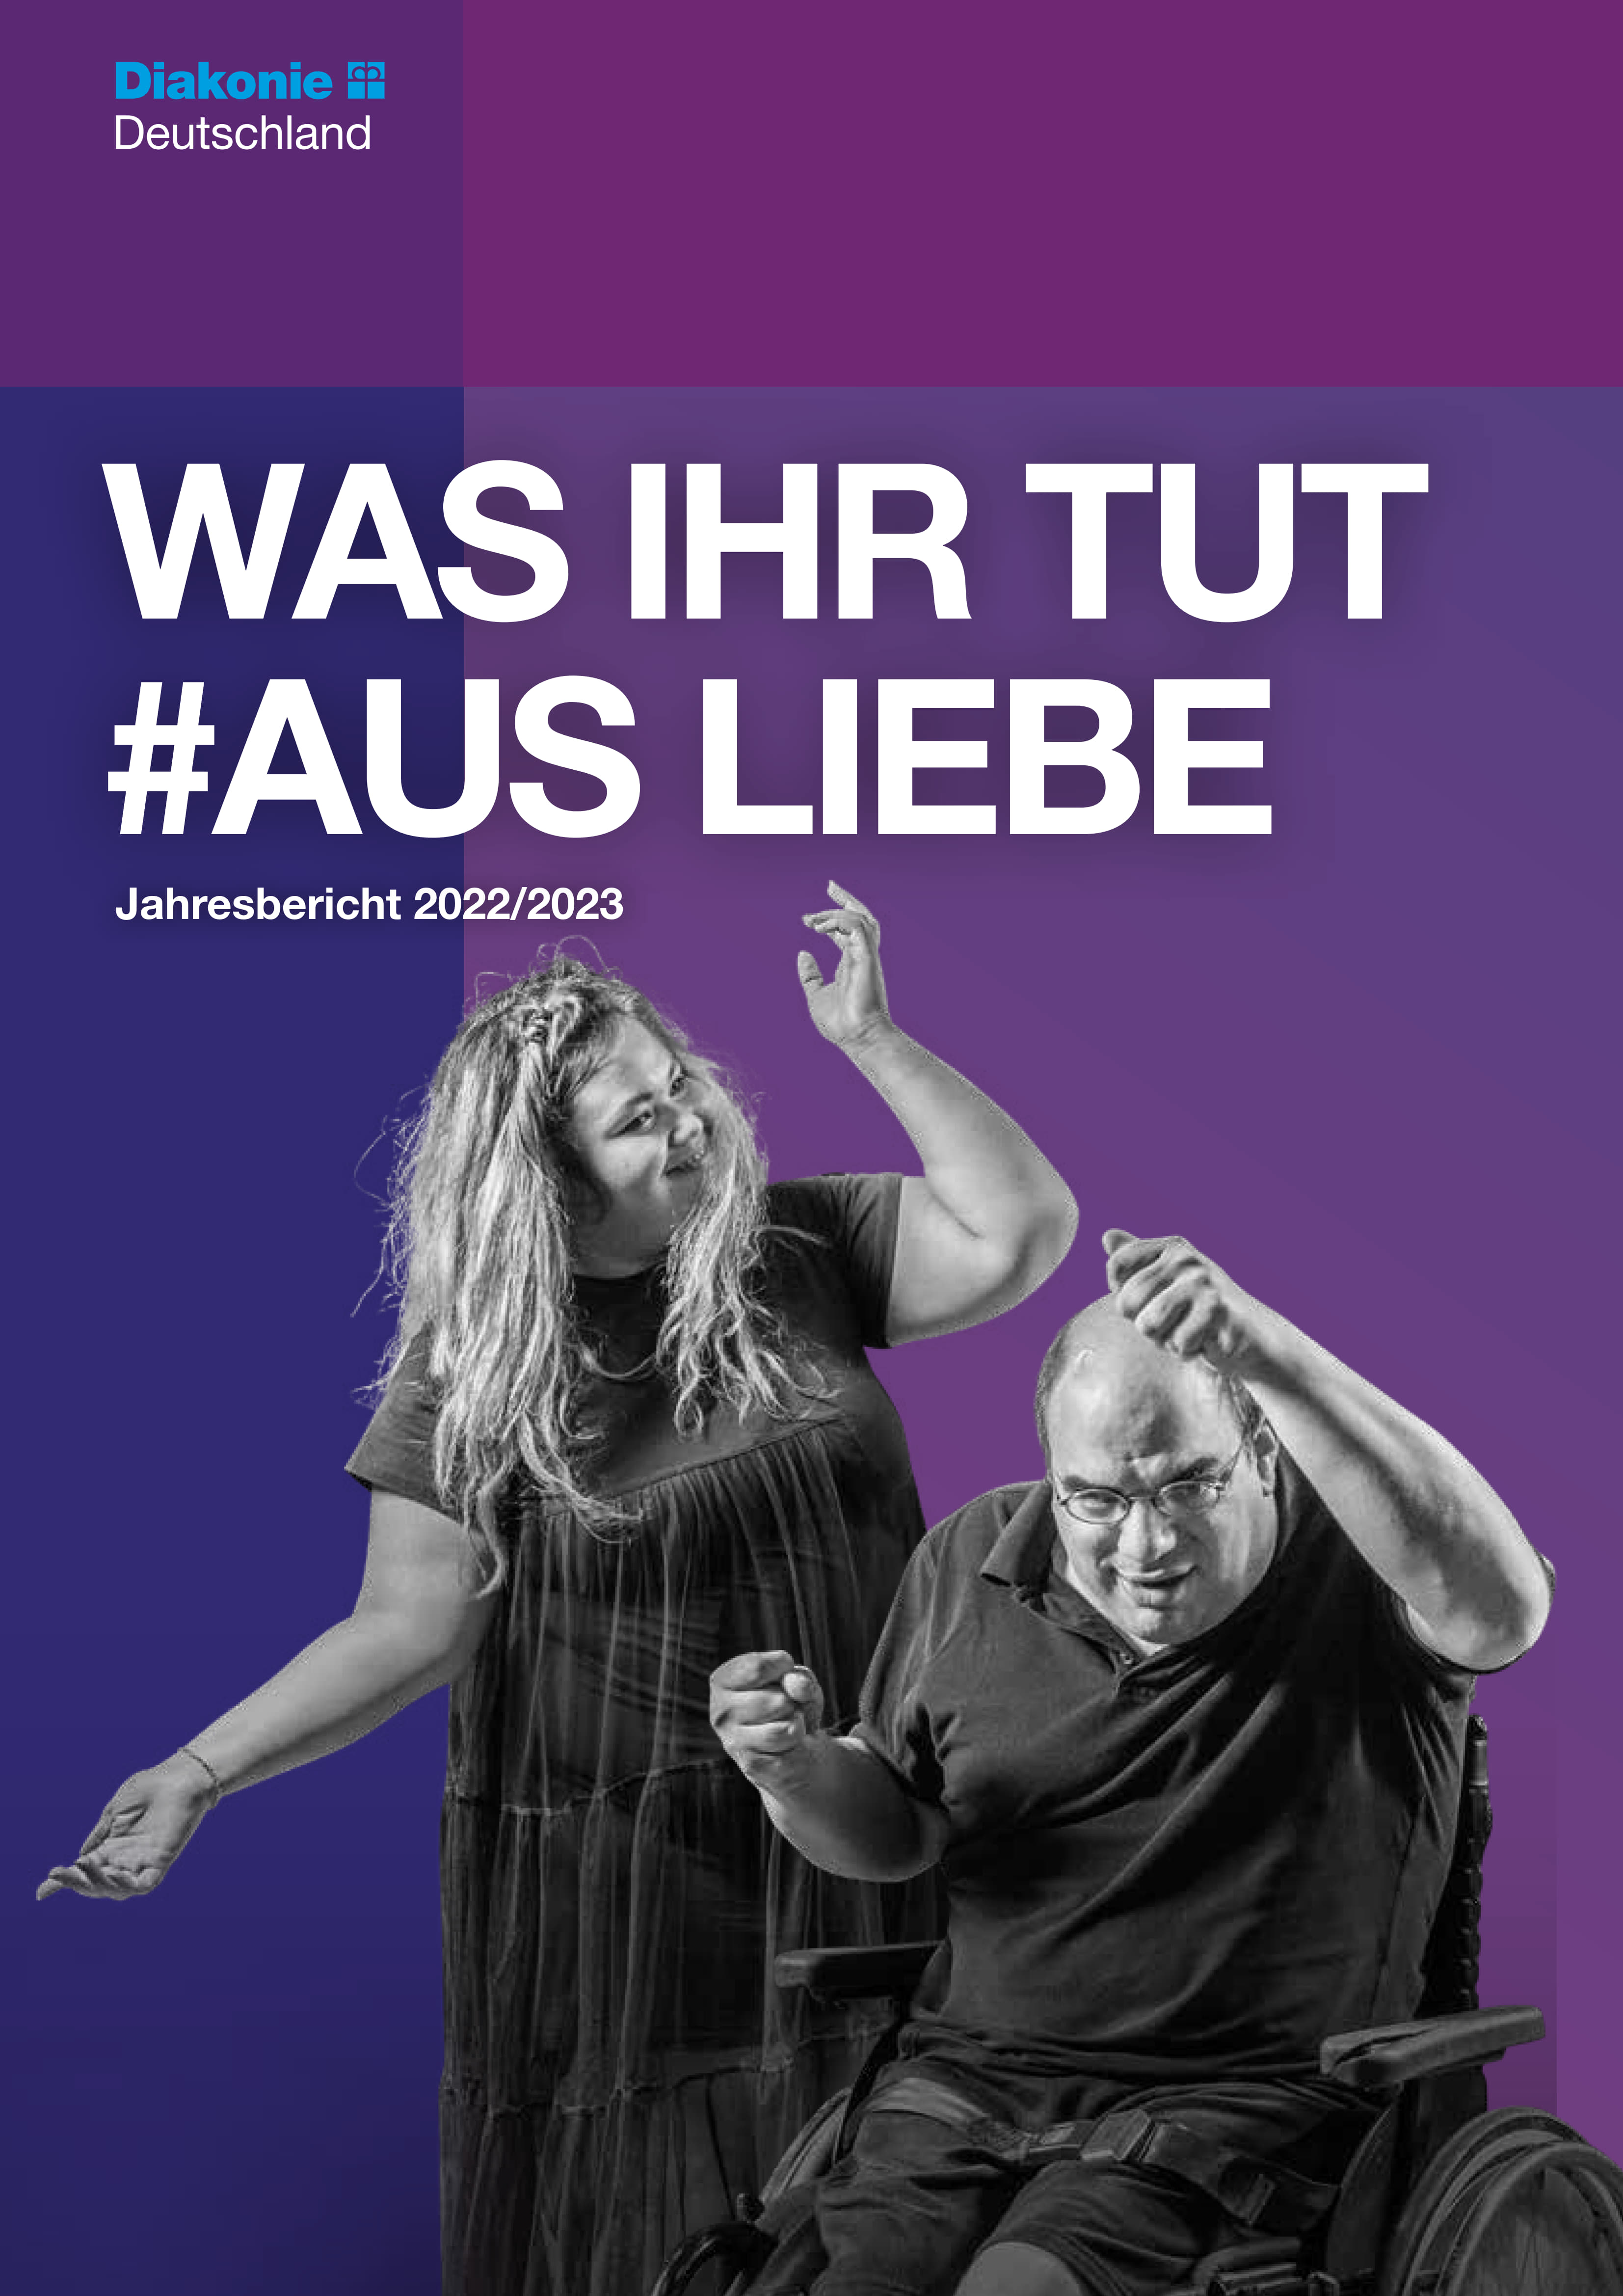 Diakonie Deutschland Jahresbericht 2022/2023 - Was ihr tut #ausLiebe